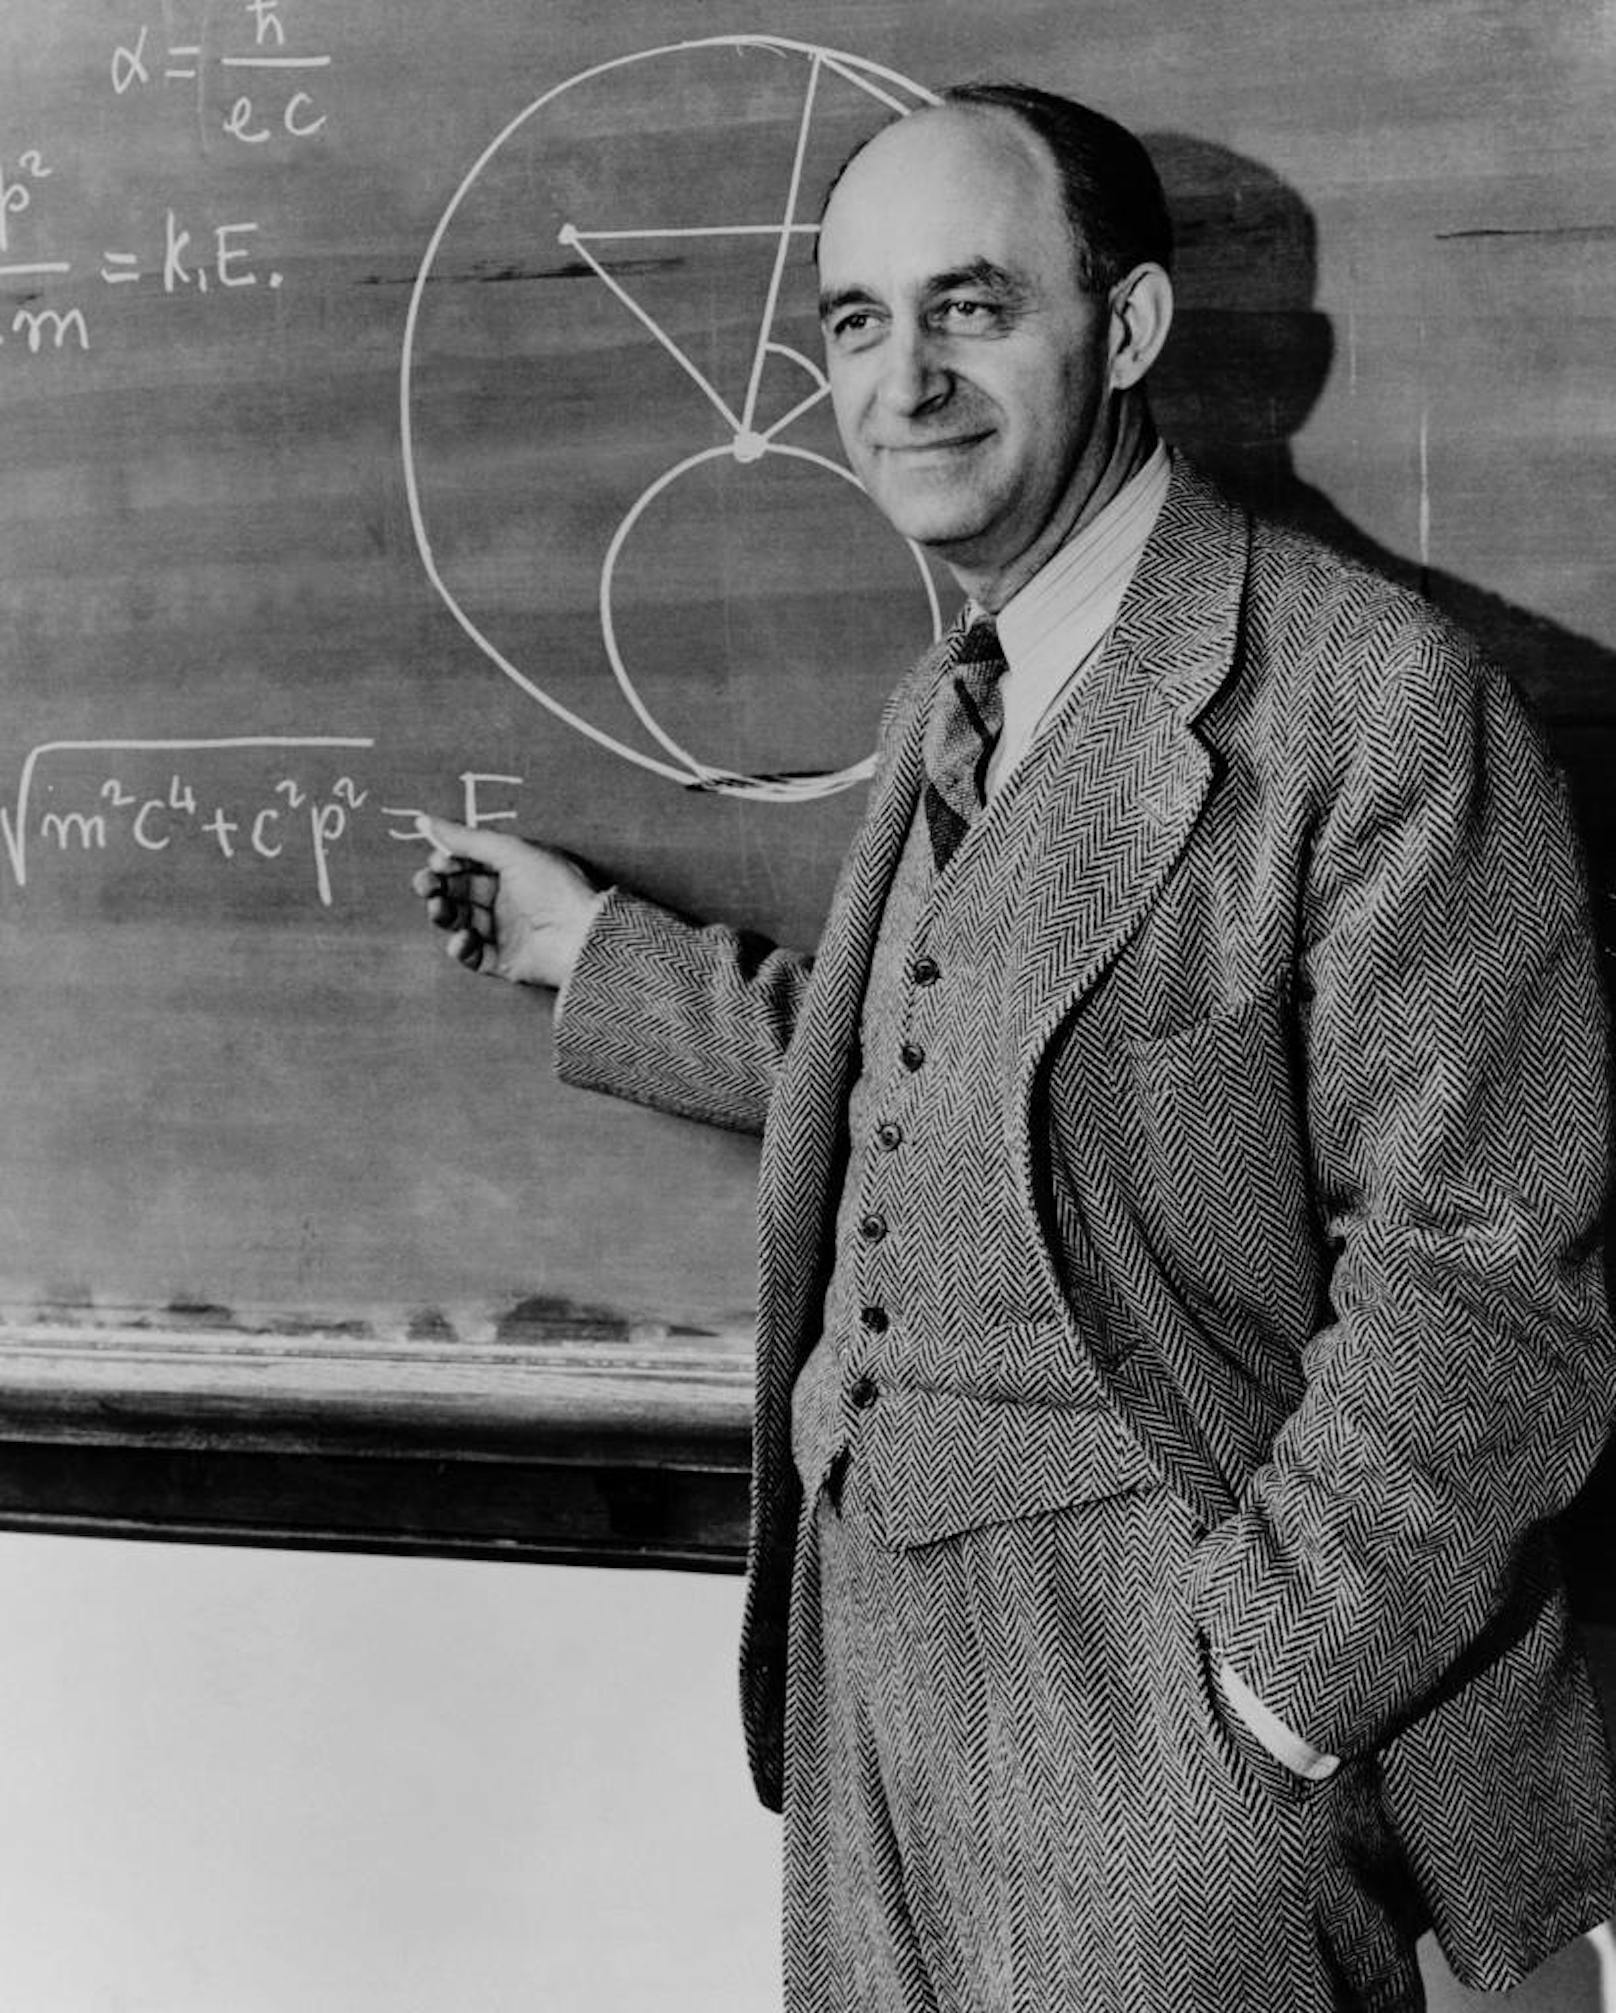 So glaubte Fermi im Jahr 1934, dass er das Element "Hesperium" entdeckte. Jahre später wurde nachgewiesen, dass es dieses gar nicht gibt. Fermi entschuldigte sich für seinen Fehler, durfte aber den Preis behalten. 